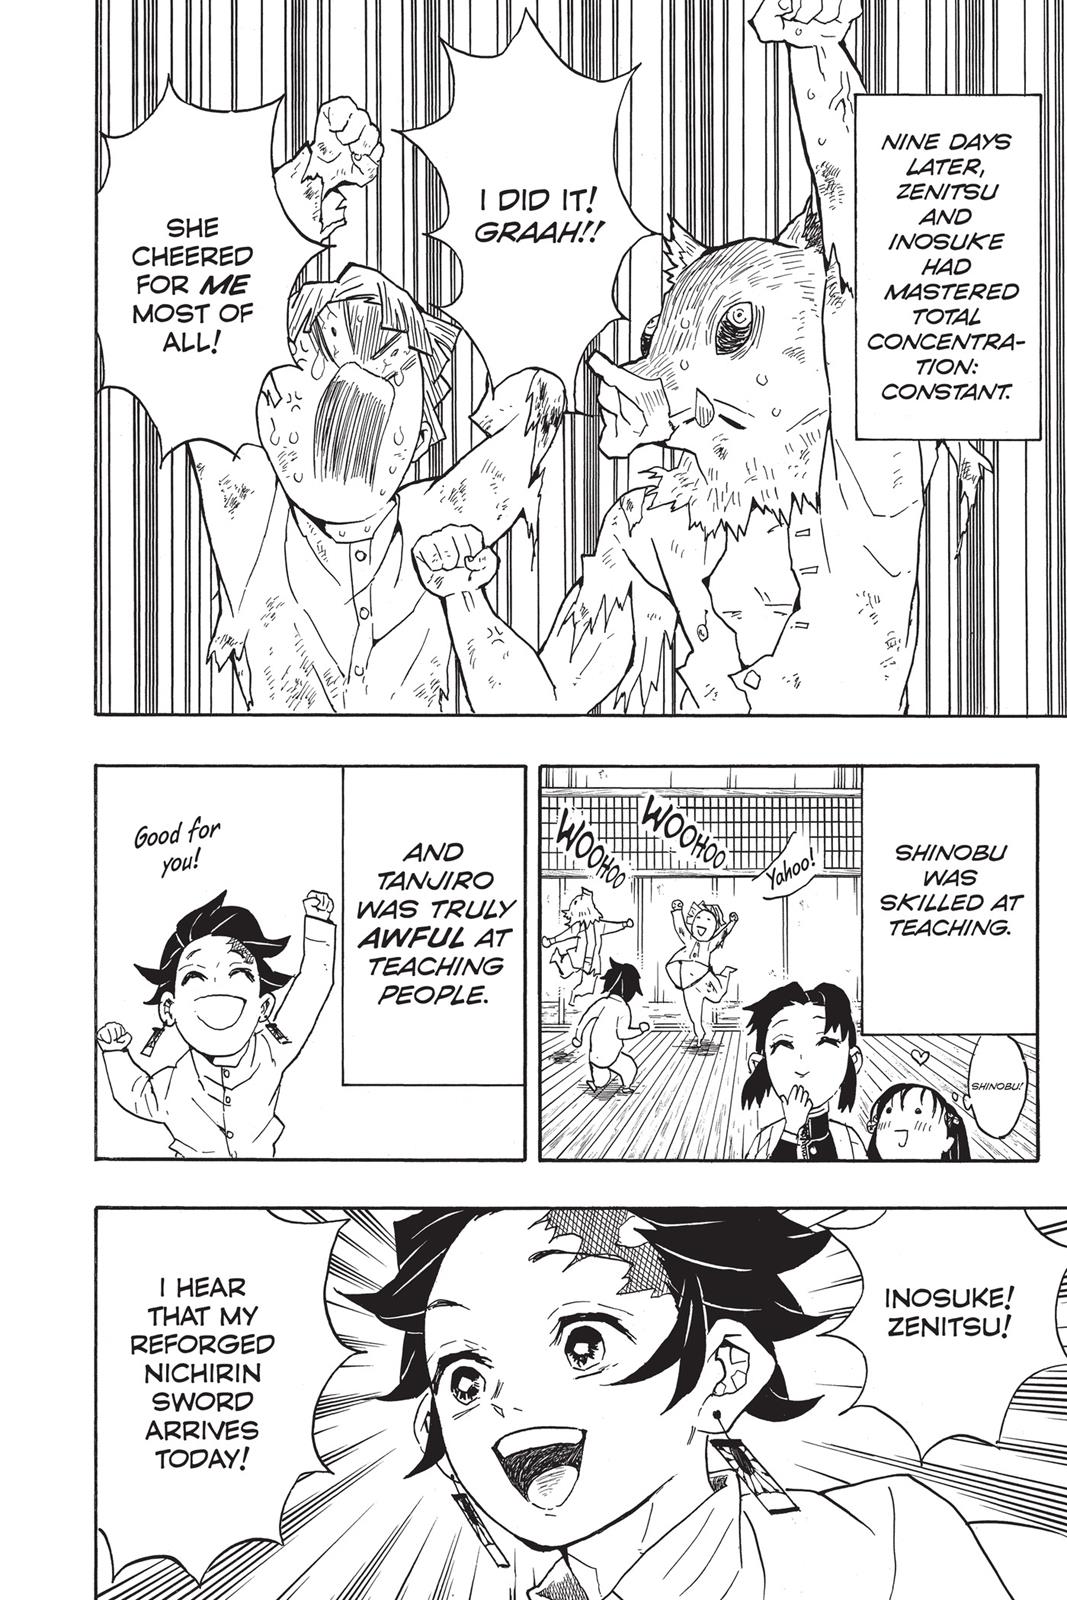 Demon Slayer Manga Manga Chapter - 51 - image 4